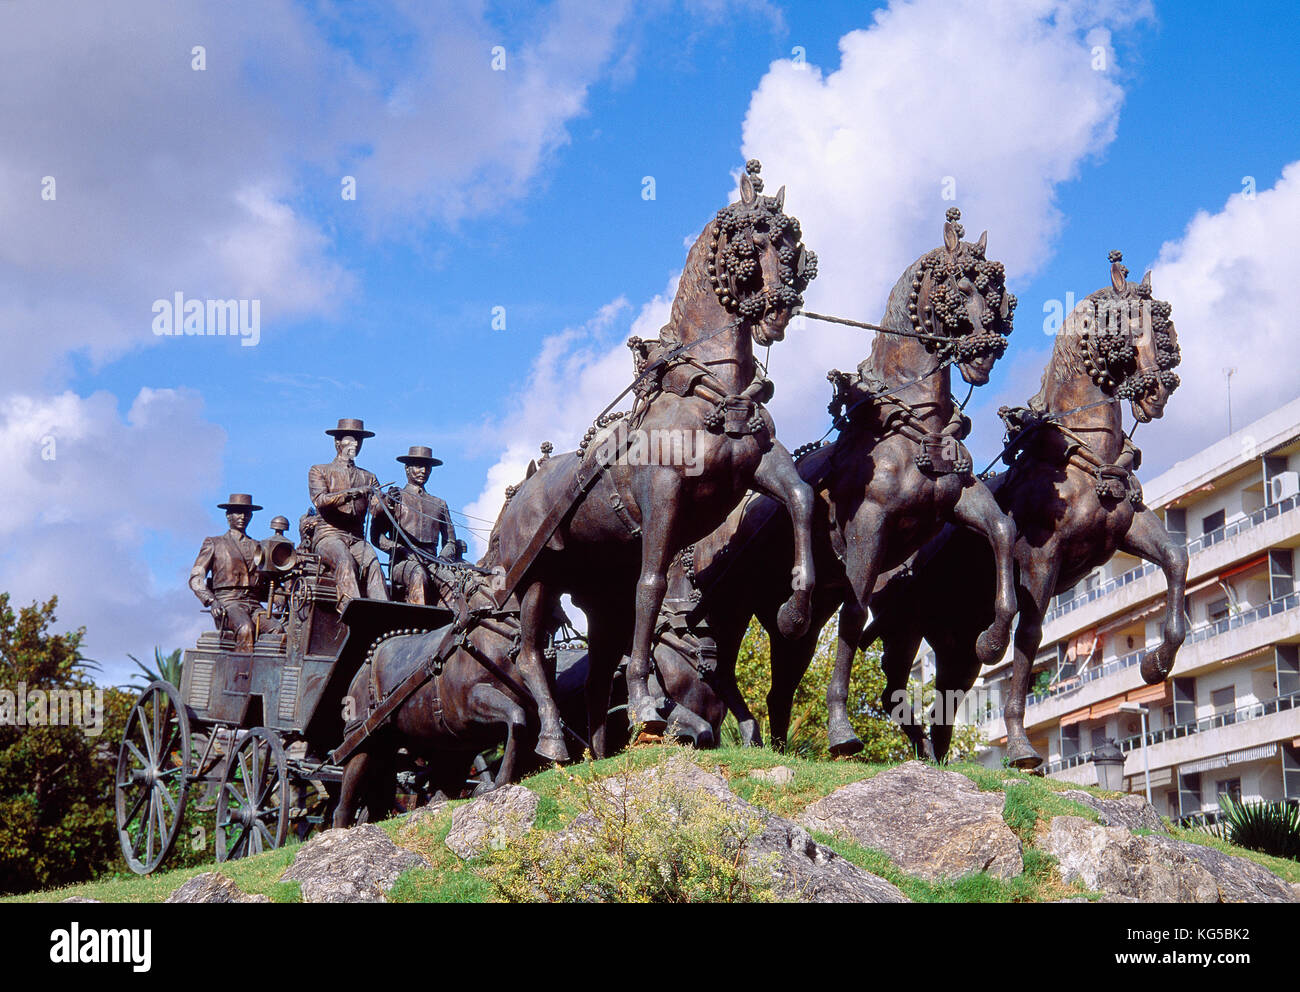 Horse-drawn carriage statue, Mamelon Square. Jerez de la Frontera, Cadiz province, Andalucia, Spain. Stock Photo